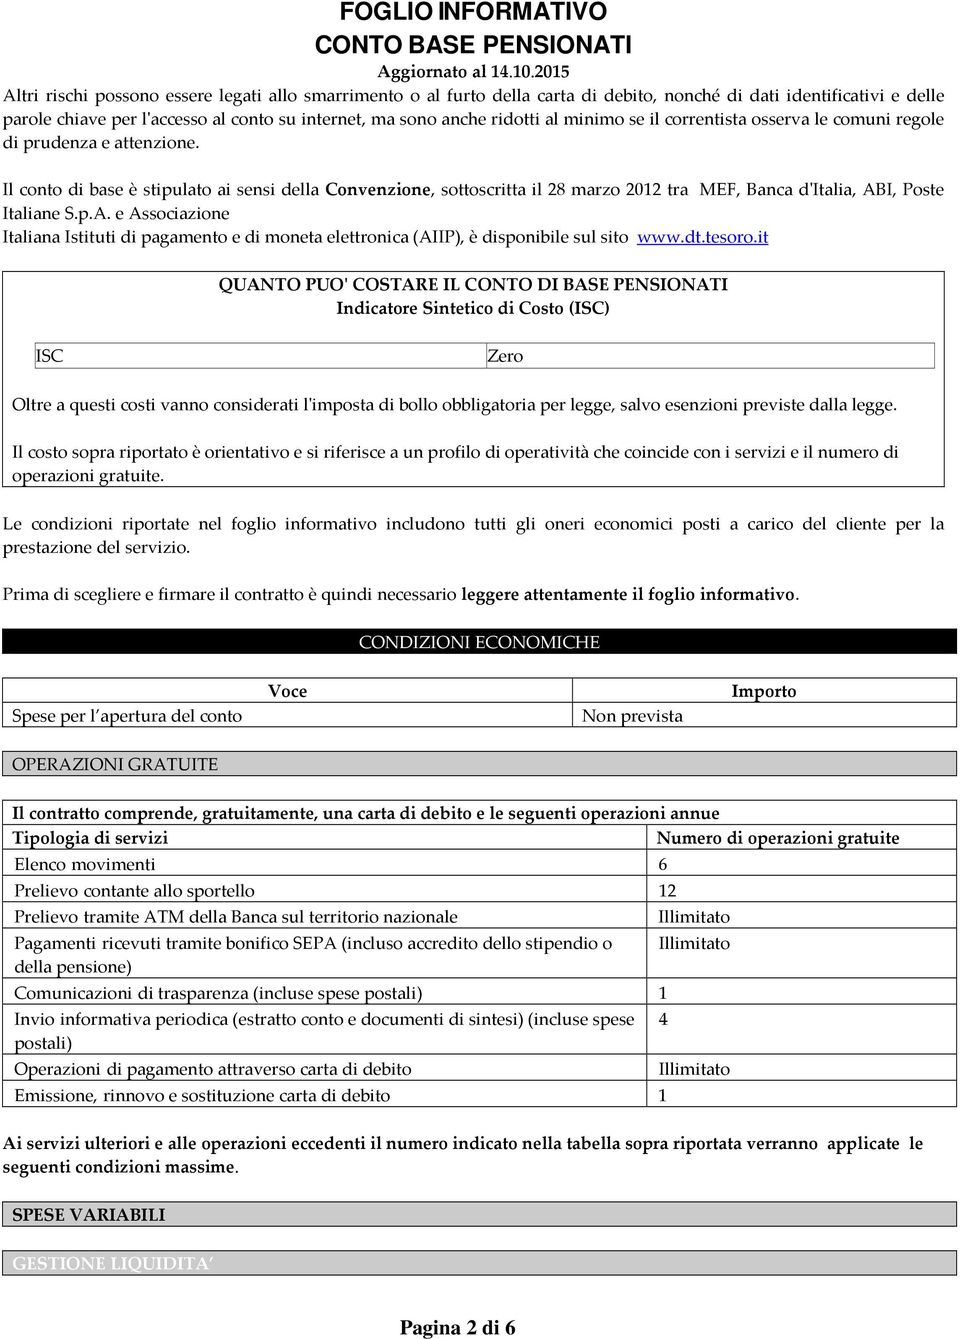 Il conto di base è stipulato ai sensi della Convenzione, sottoscritta il 28 marzo 2012 tra MEF, Banca d'italia, AB